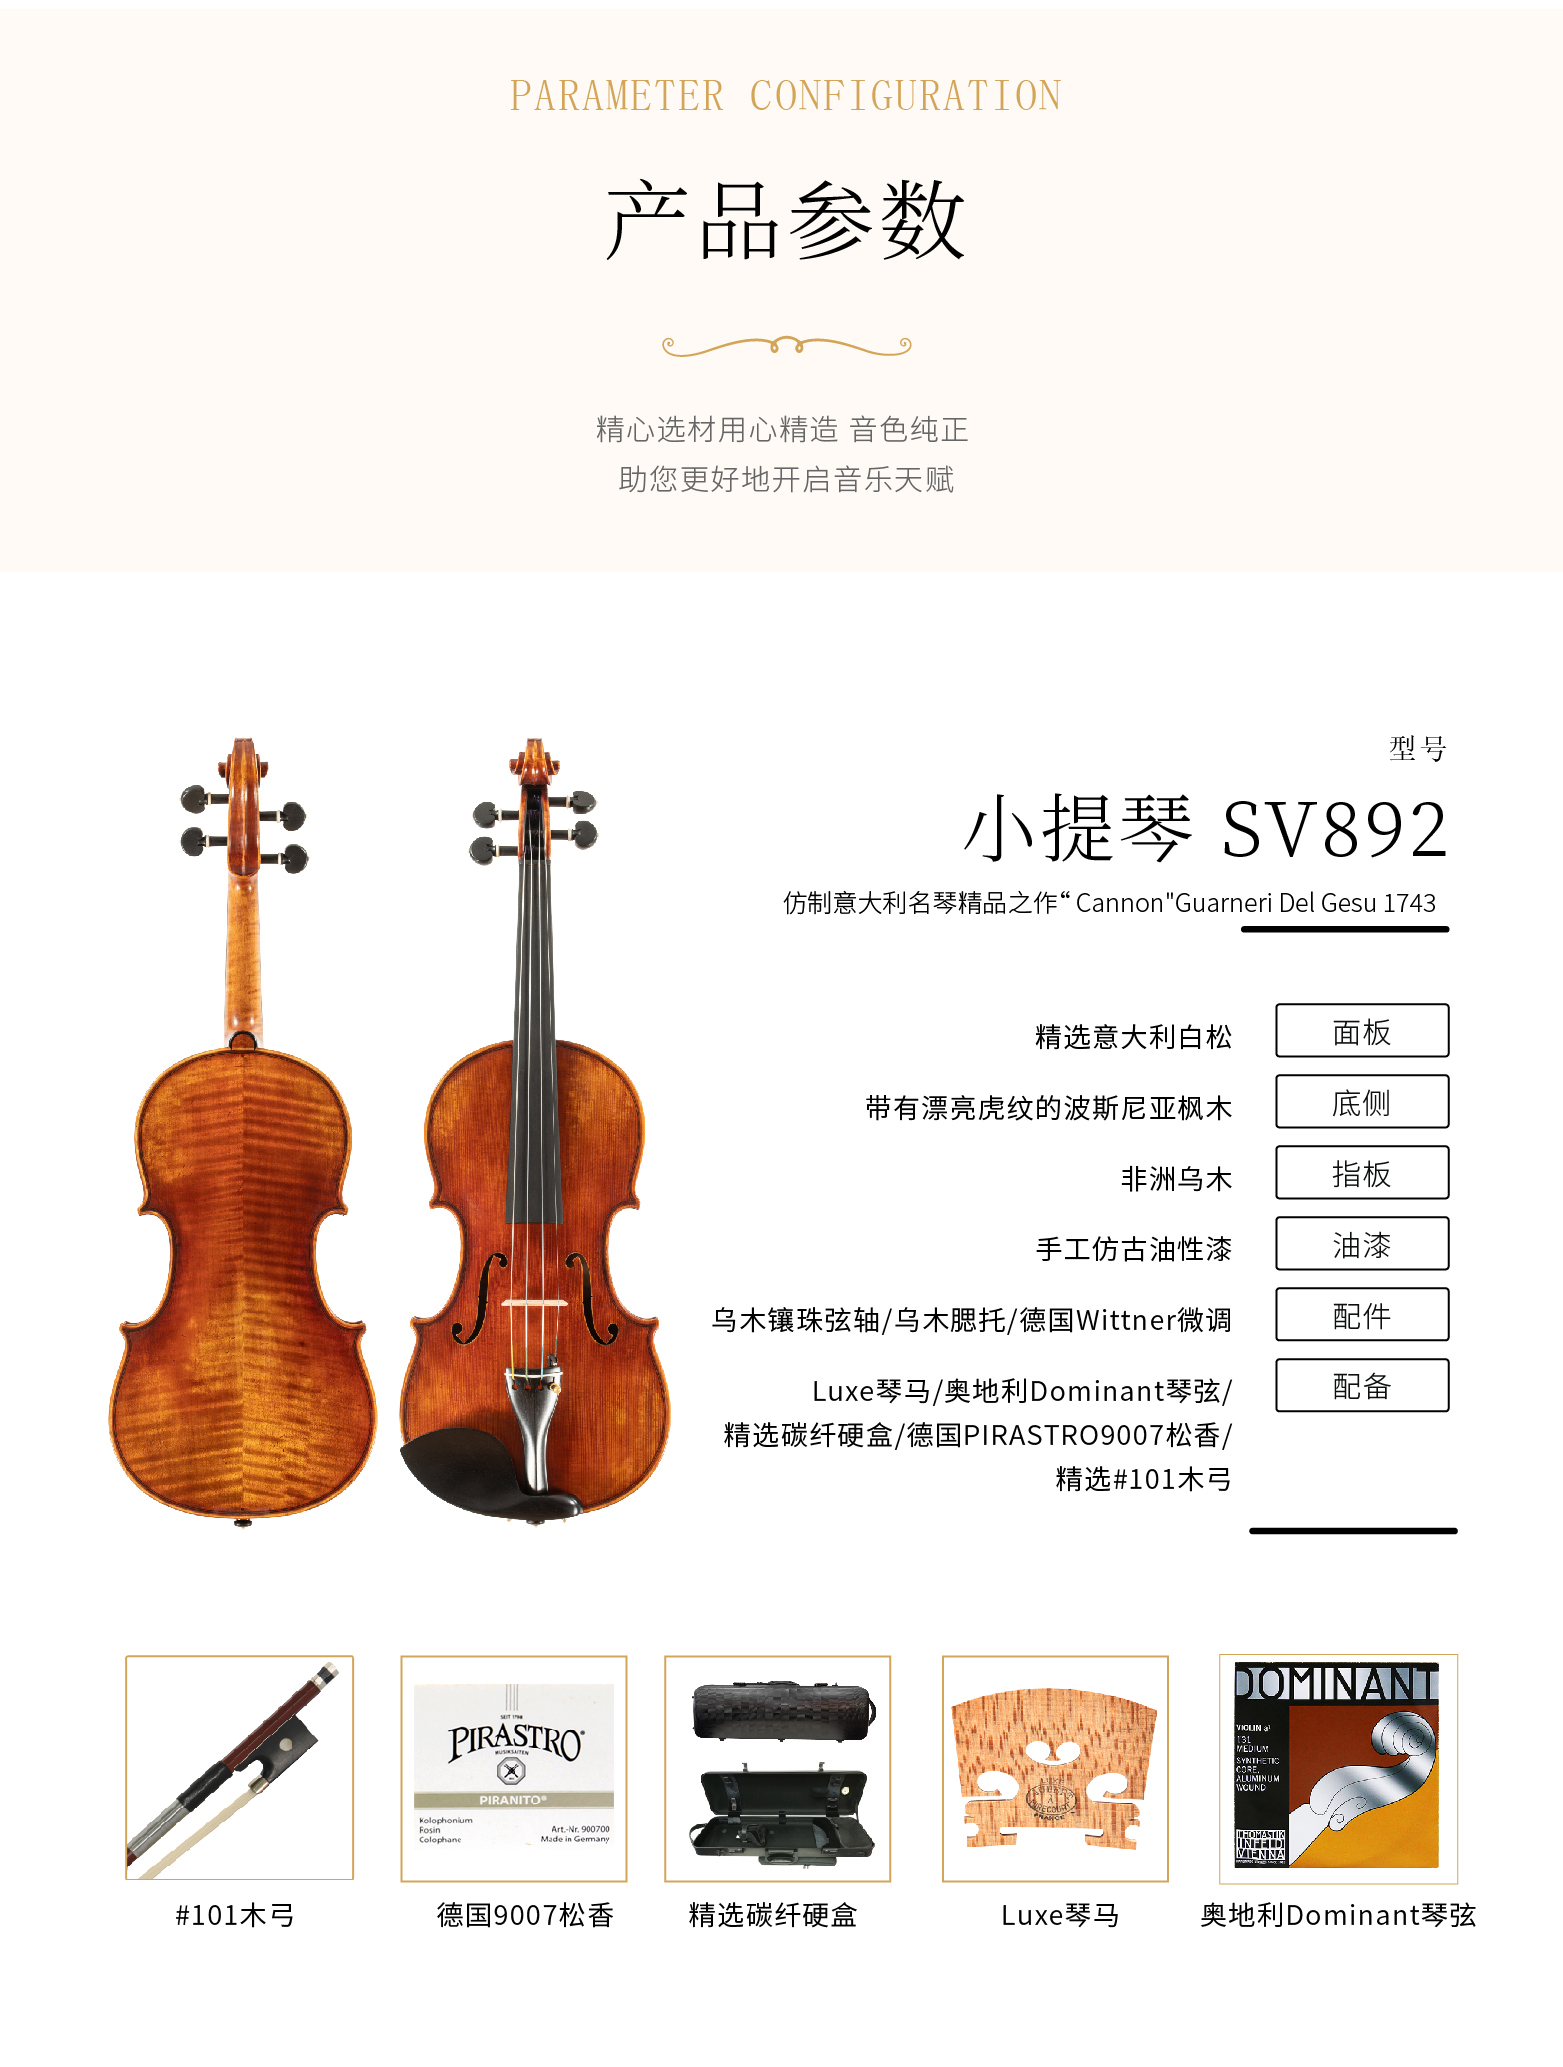 熙珑乐器专营店-详情-v1-2_SV892小提琴_复制_PC-副本-2_03.jpg